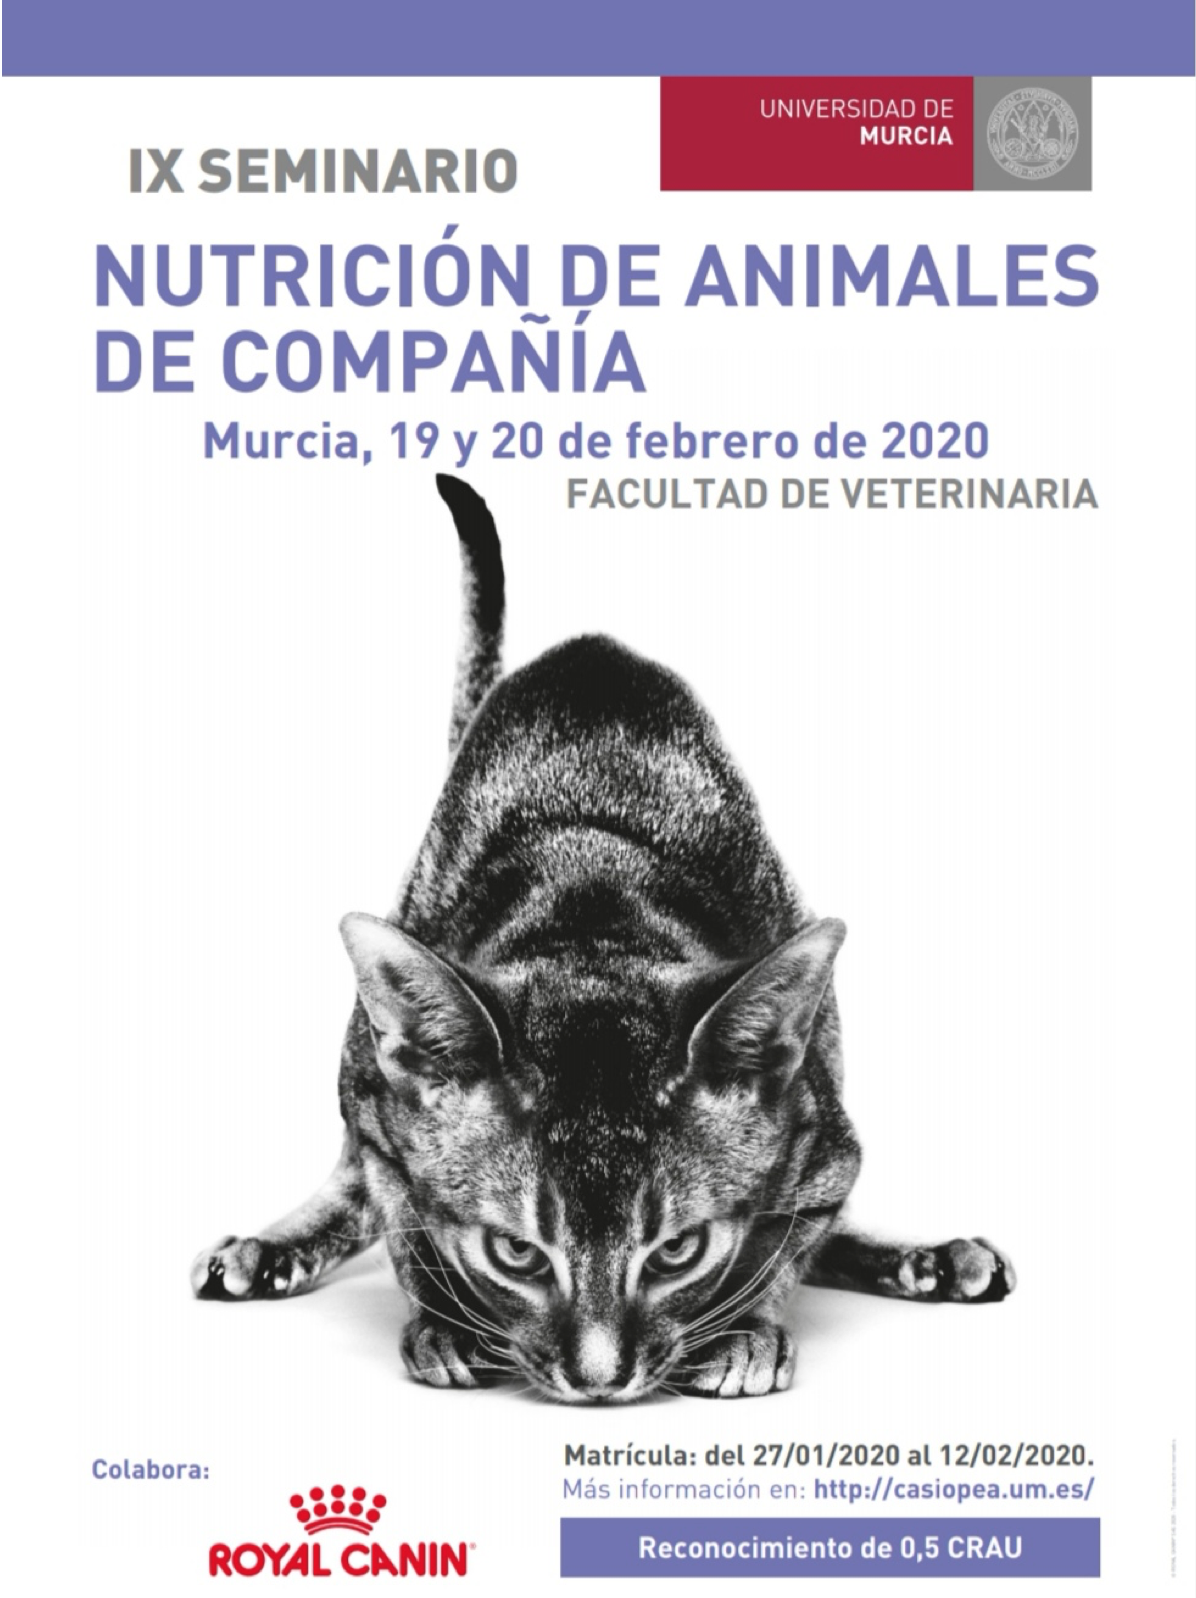 IX Seminario Nutrición de Animales de Compañia